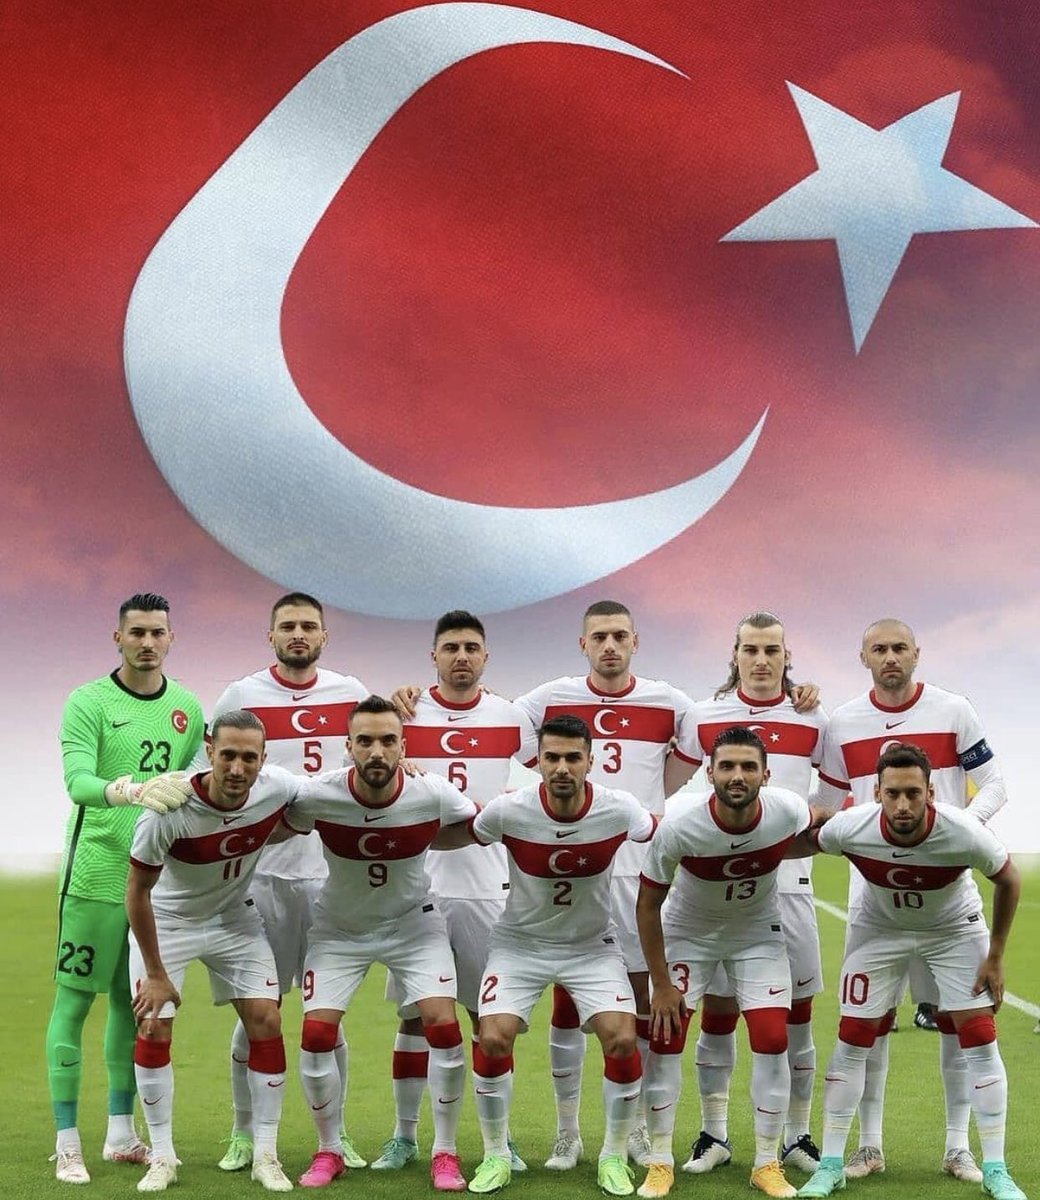 Kalbimiz ve dualarımız sizinle vurduğunuz gol olsun gösterin Türkiye'nin gücünü.. 🙏🙏🙏❤❤❤🇹🇷🇹🇷🇹🇷🇹🇷🇹🇷🇹🇷🇹🇷
#AsBayraklarıAs
#BizimCocuklar
#AslanGibi
#Türkiyeningücü
#millitakim
#EURO2020